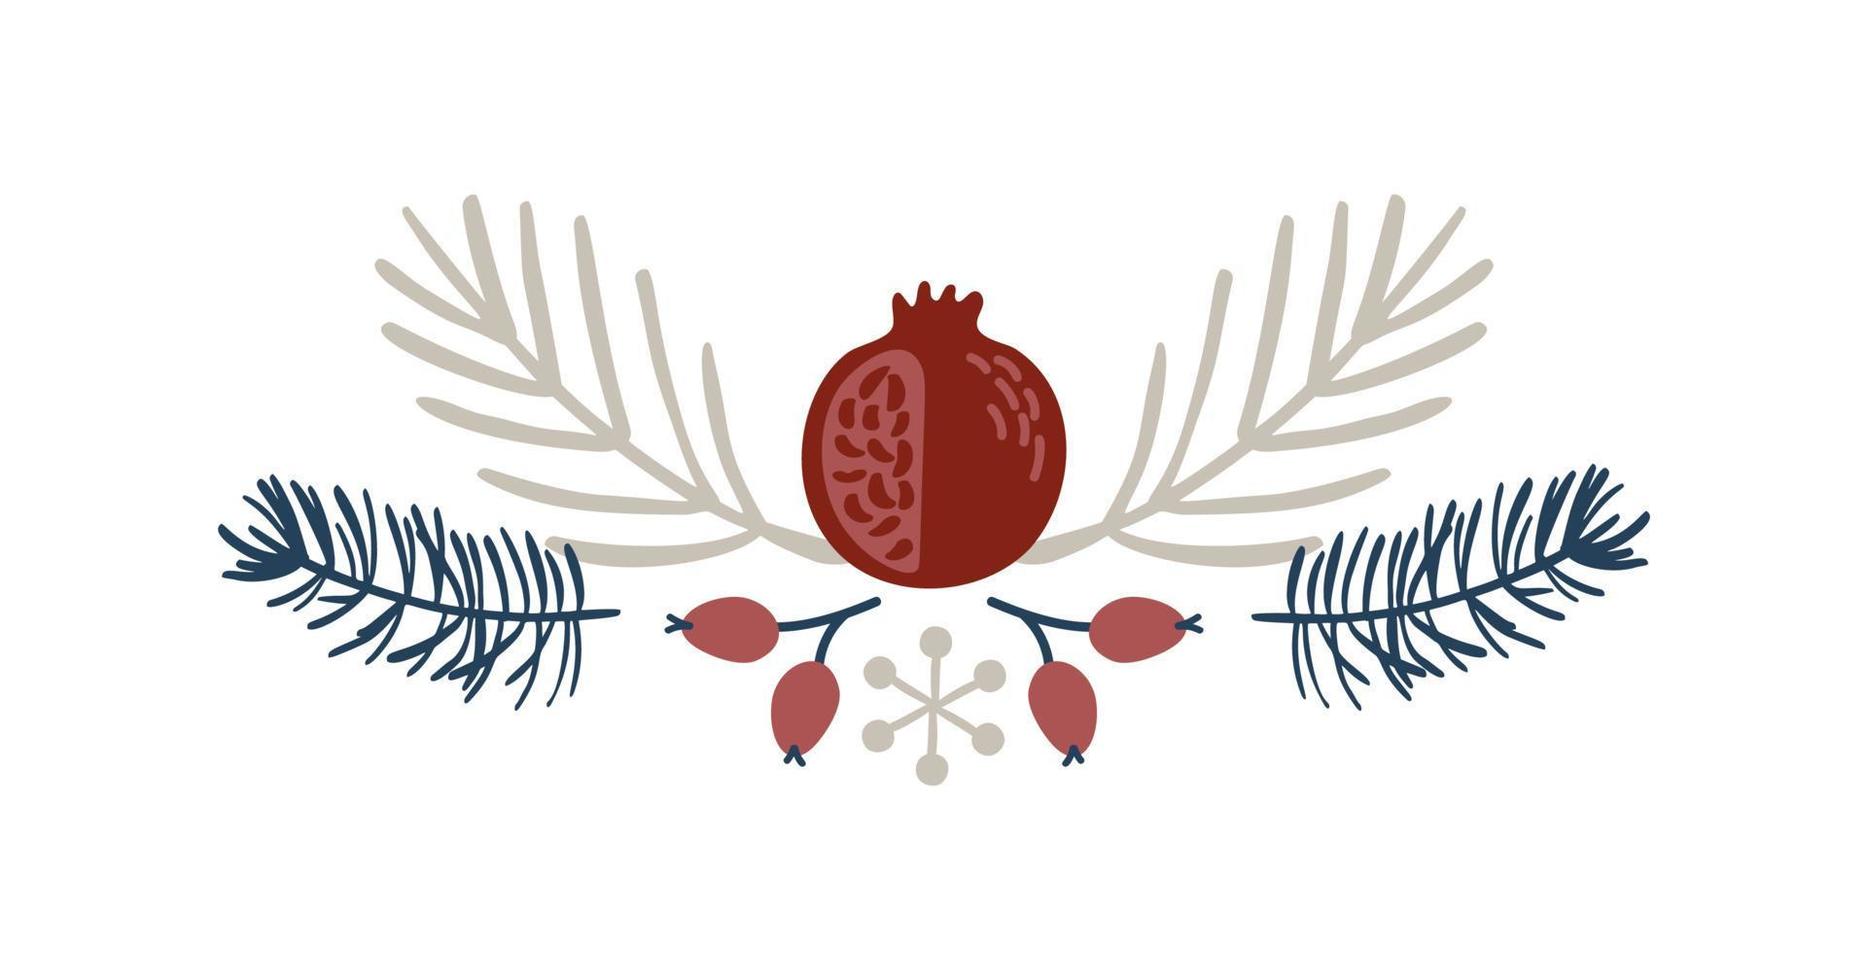 rama de navidad dibujada a mano y divisor de borde de vector granate. elementos de diseño decoración corona y símbolo de vacaciones con flores y bayas ramas escandinavas